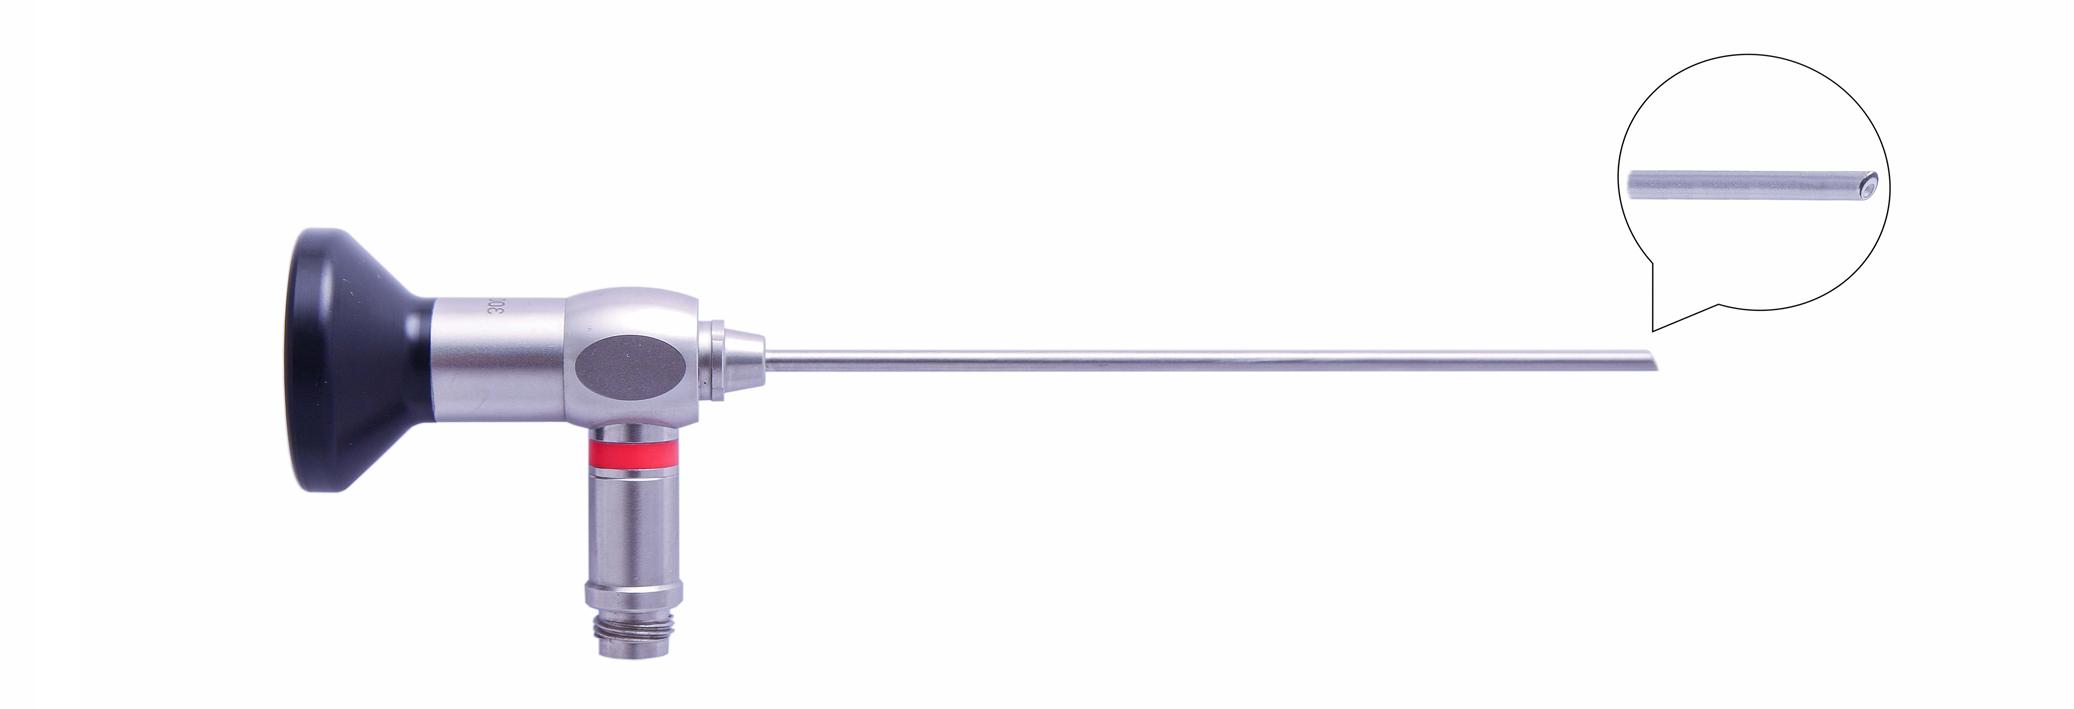 Трубка оптическая (артроскопическая, риноскопическая) ТОАР-005 диам. 2.7 мм, с углом наблюдения 30 гр. (дл. 110 мм)